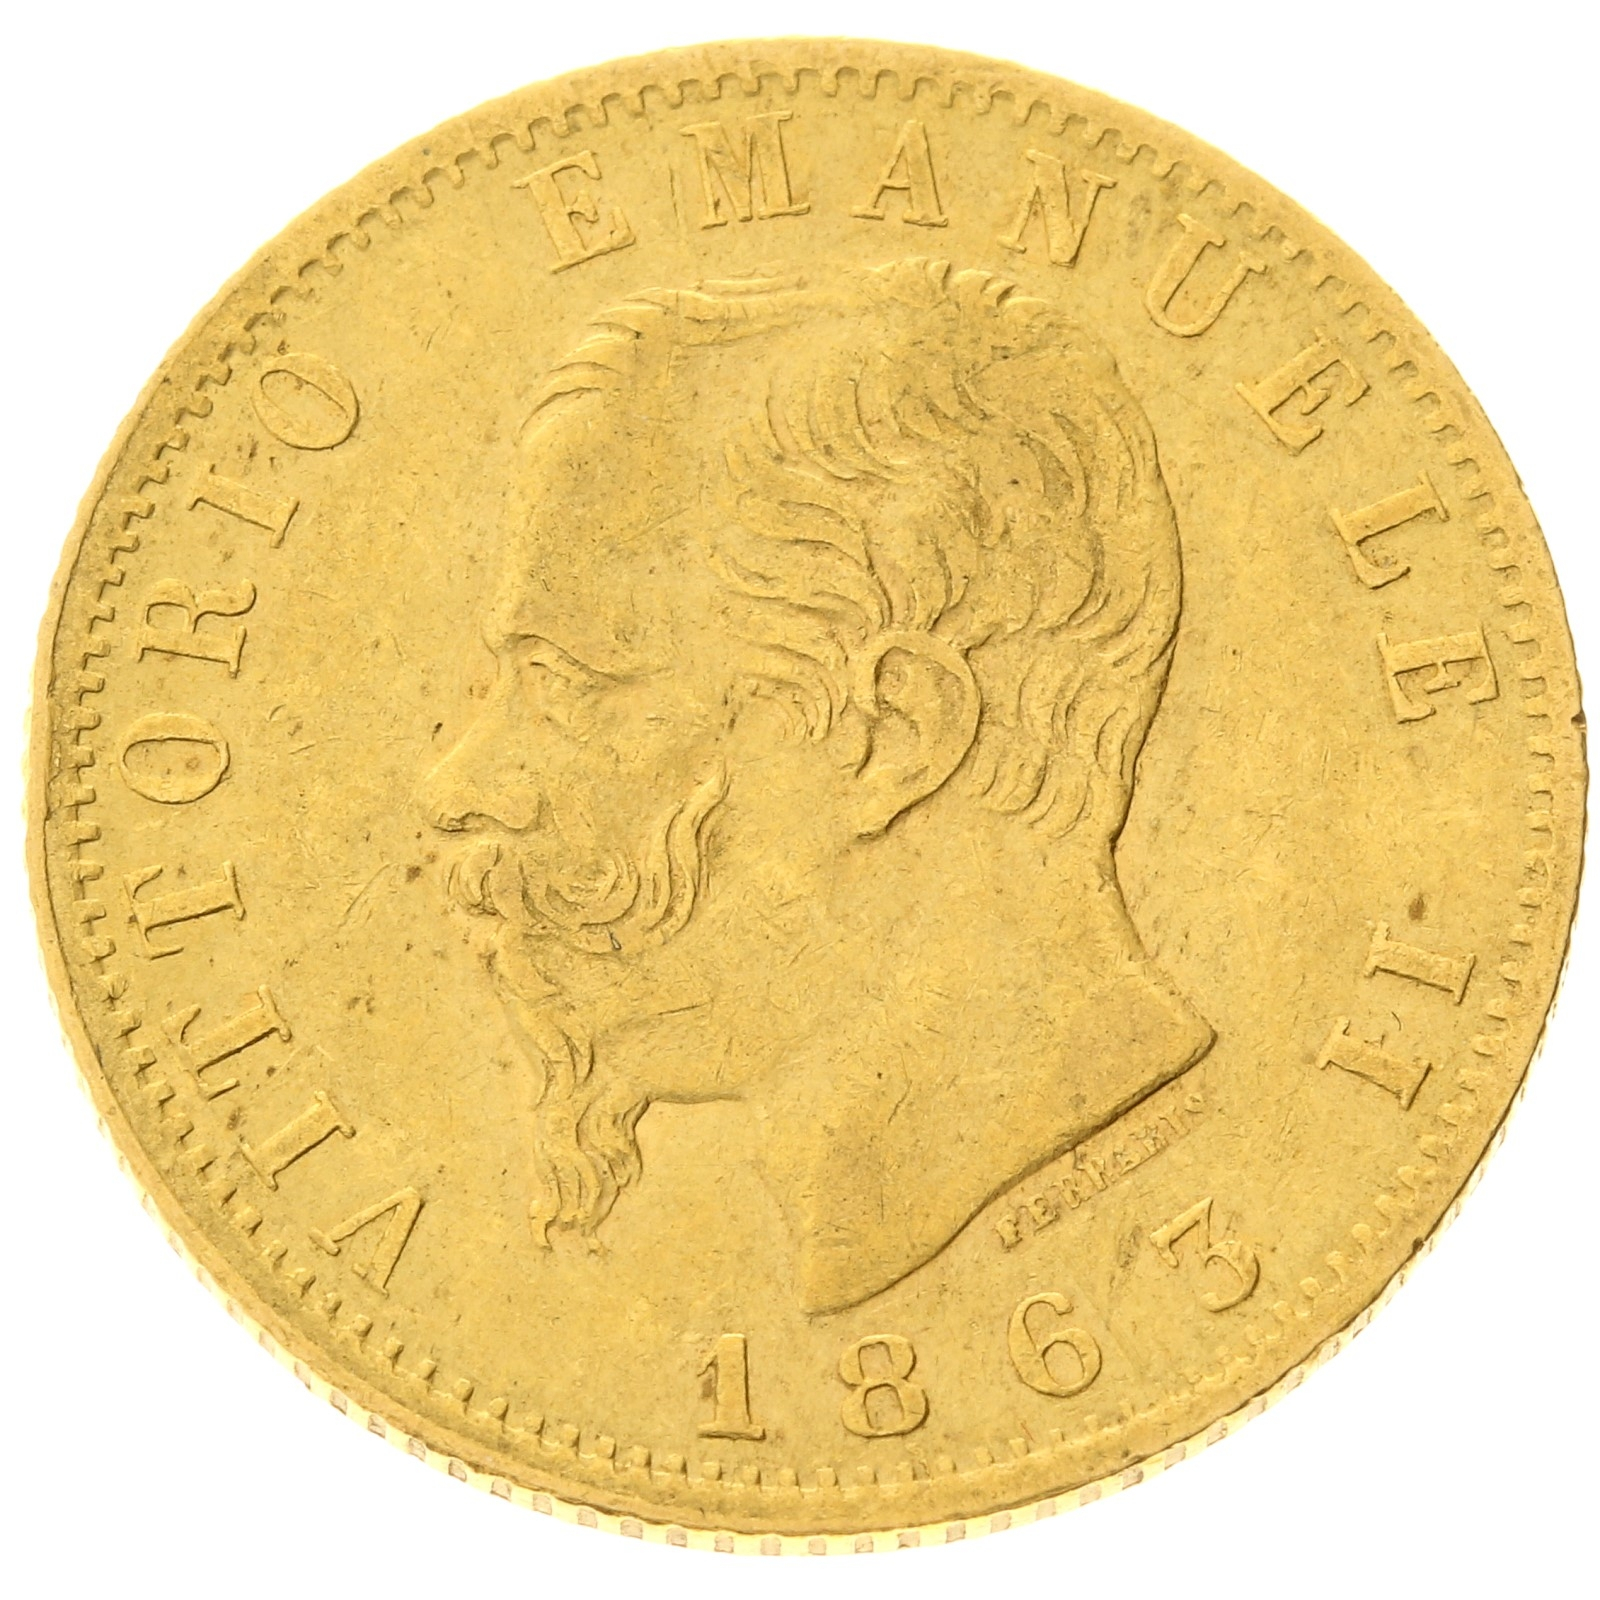 Italy - 20 Lire - 1863 - T - Vittorio Emanuele II